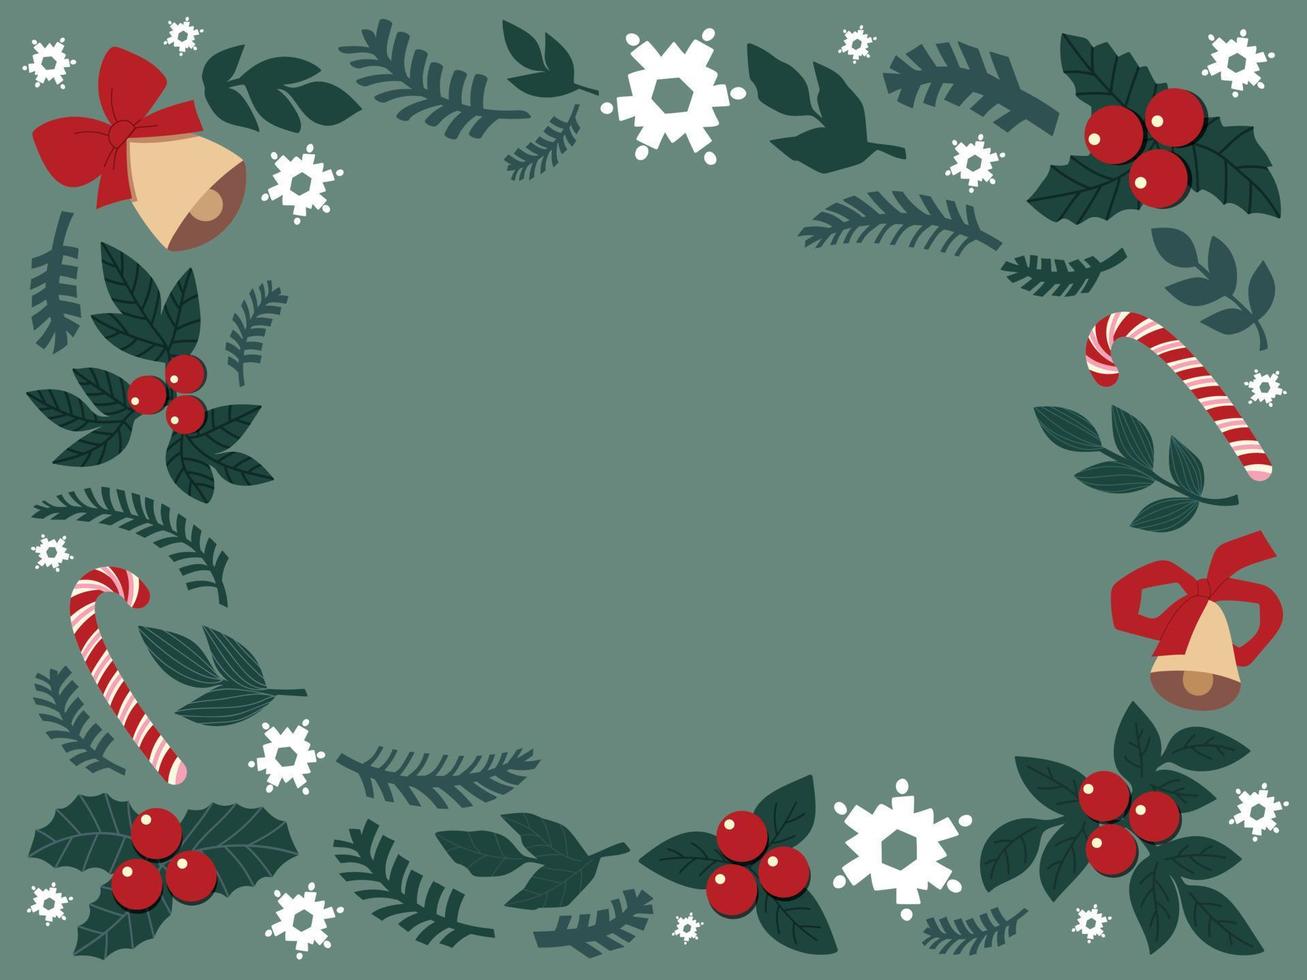 marco de fondo de navidad hecho de elementos lindos dibujados. muérdago, copos de nieve, abetos, campanas, piruletas. para tarjetas de navidad, carteles. ilustración plana vectorial. vector